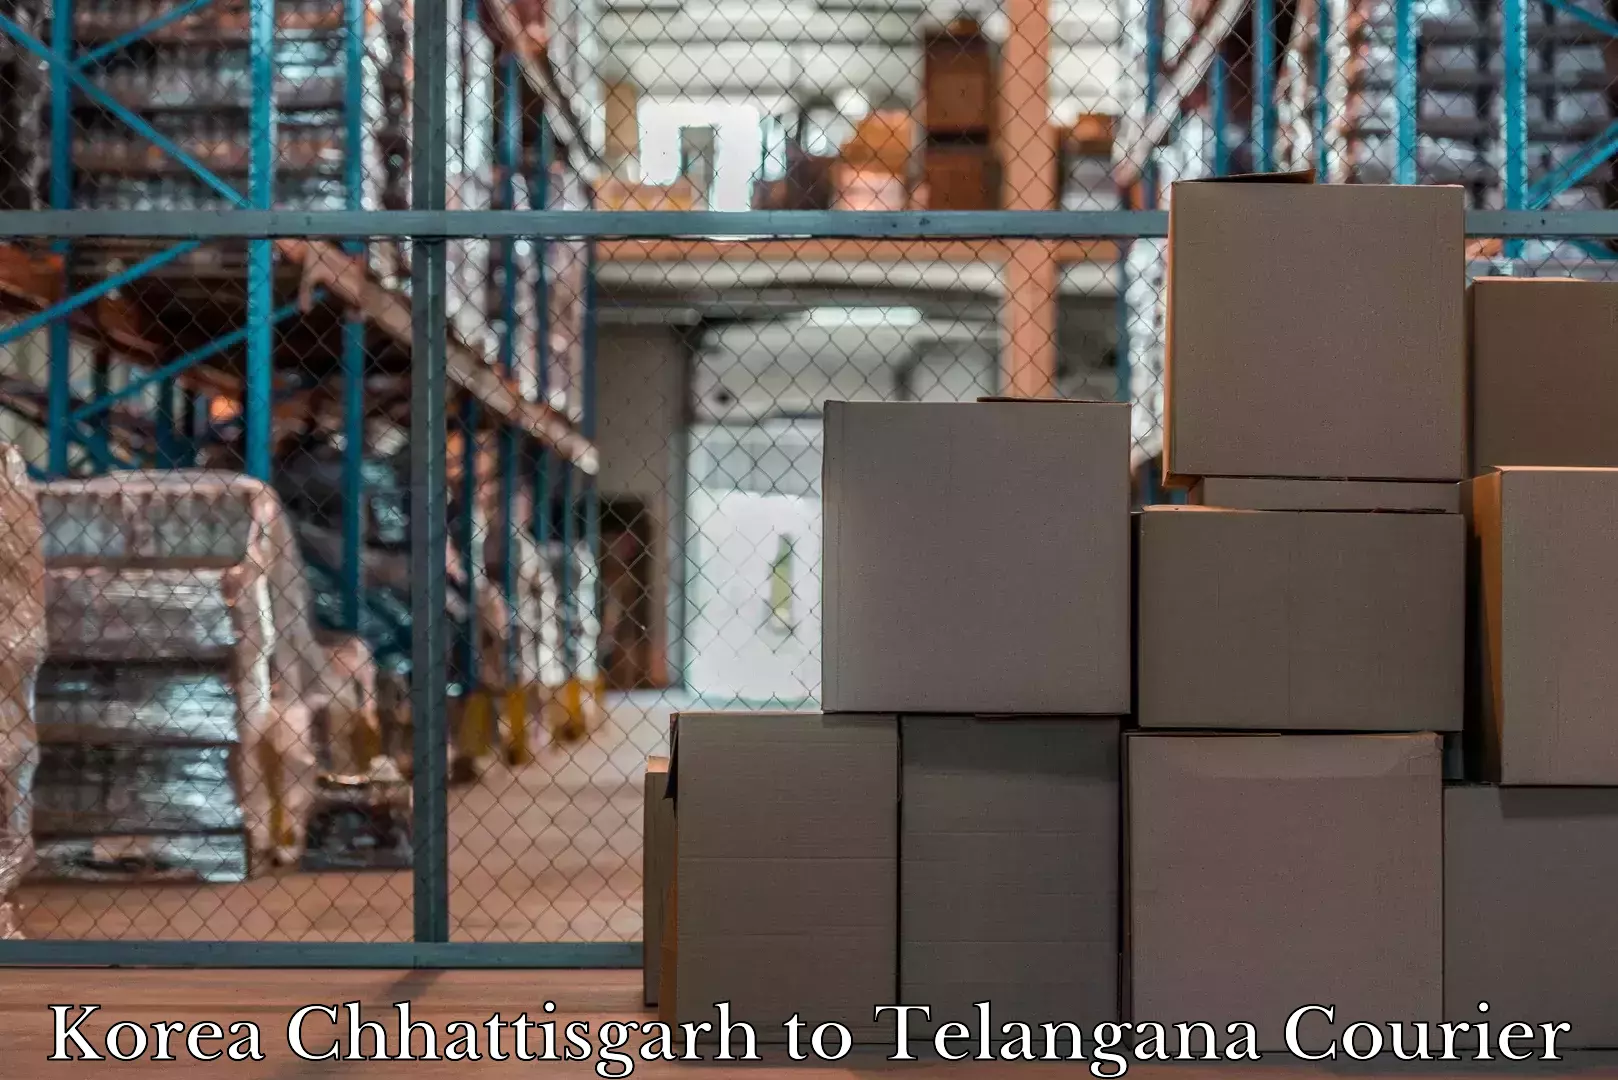 Customized luggage delivery Korea Chhattisgarh to Cheyyur